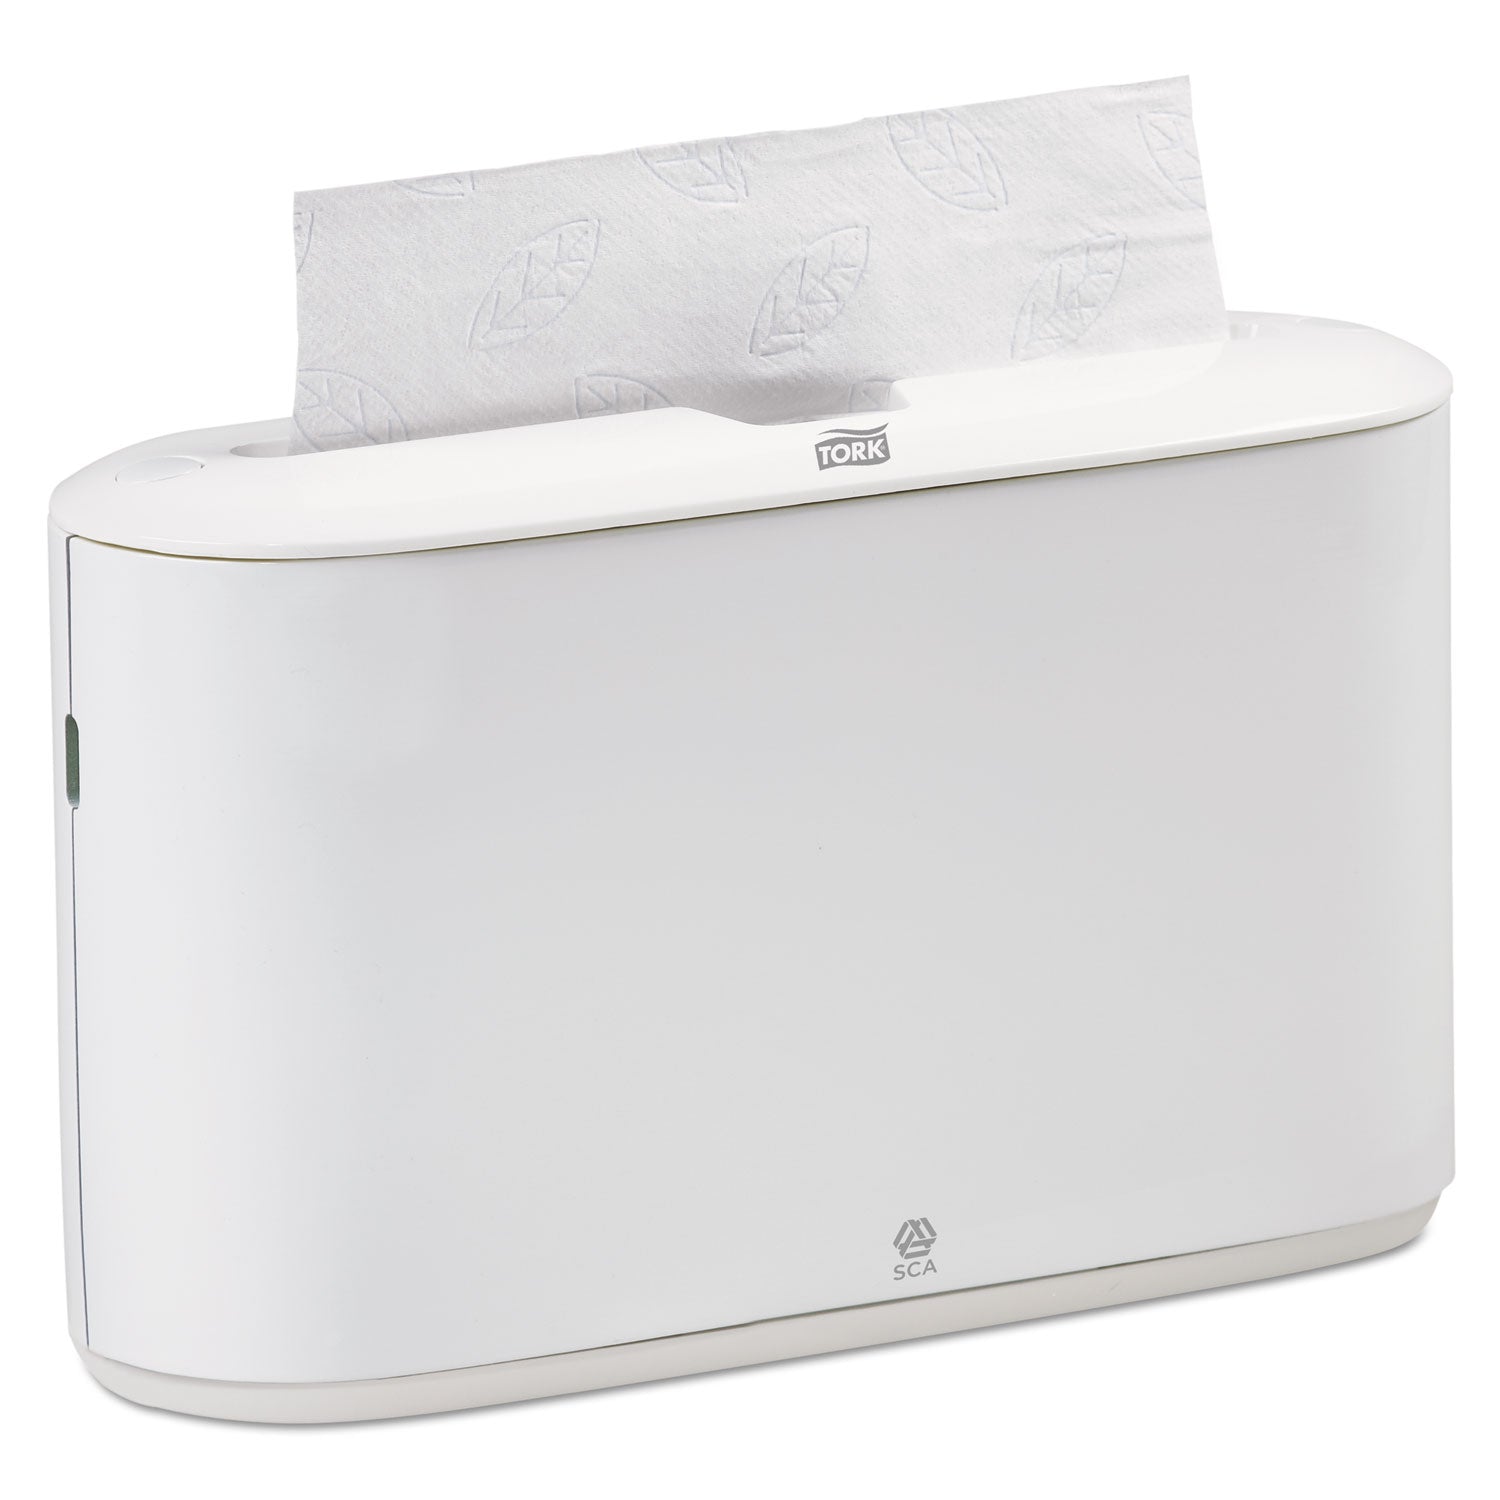 xpress-countertop-towel-dispenser-1268-x-456-x-792-white_trk302020 - 1